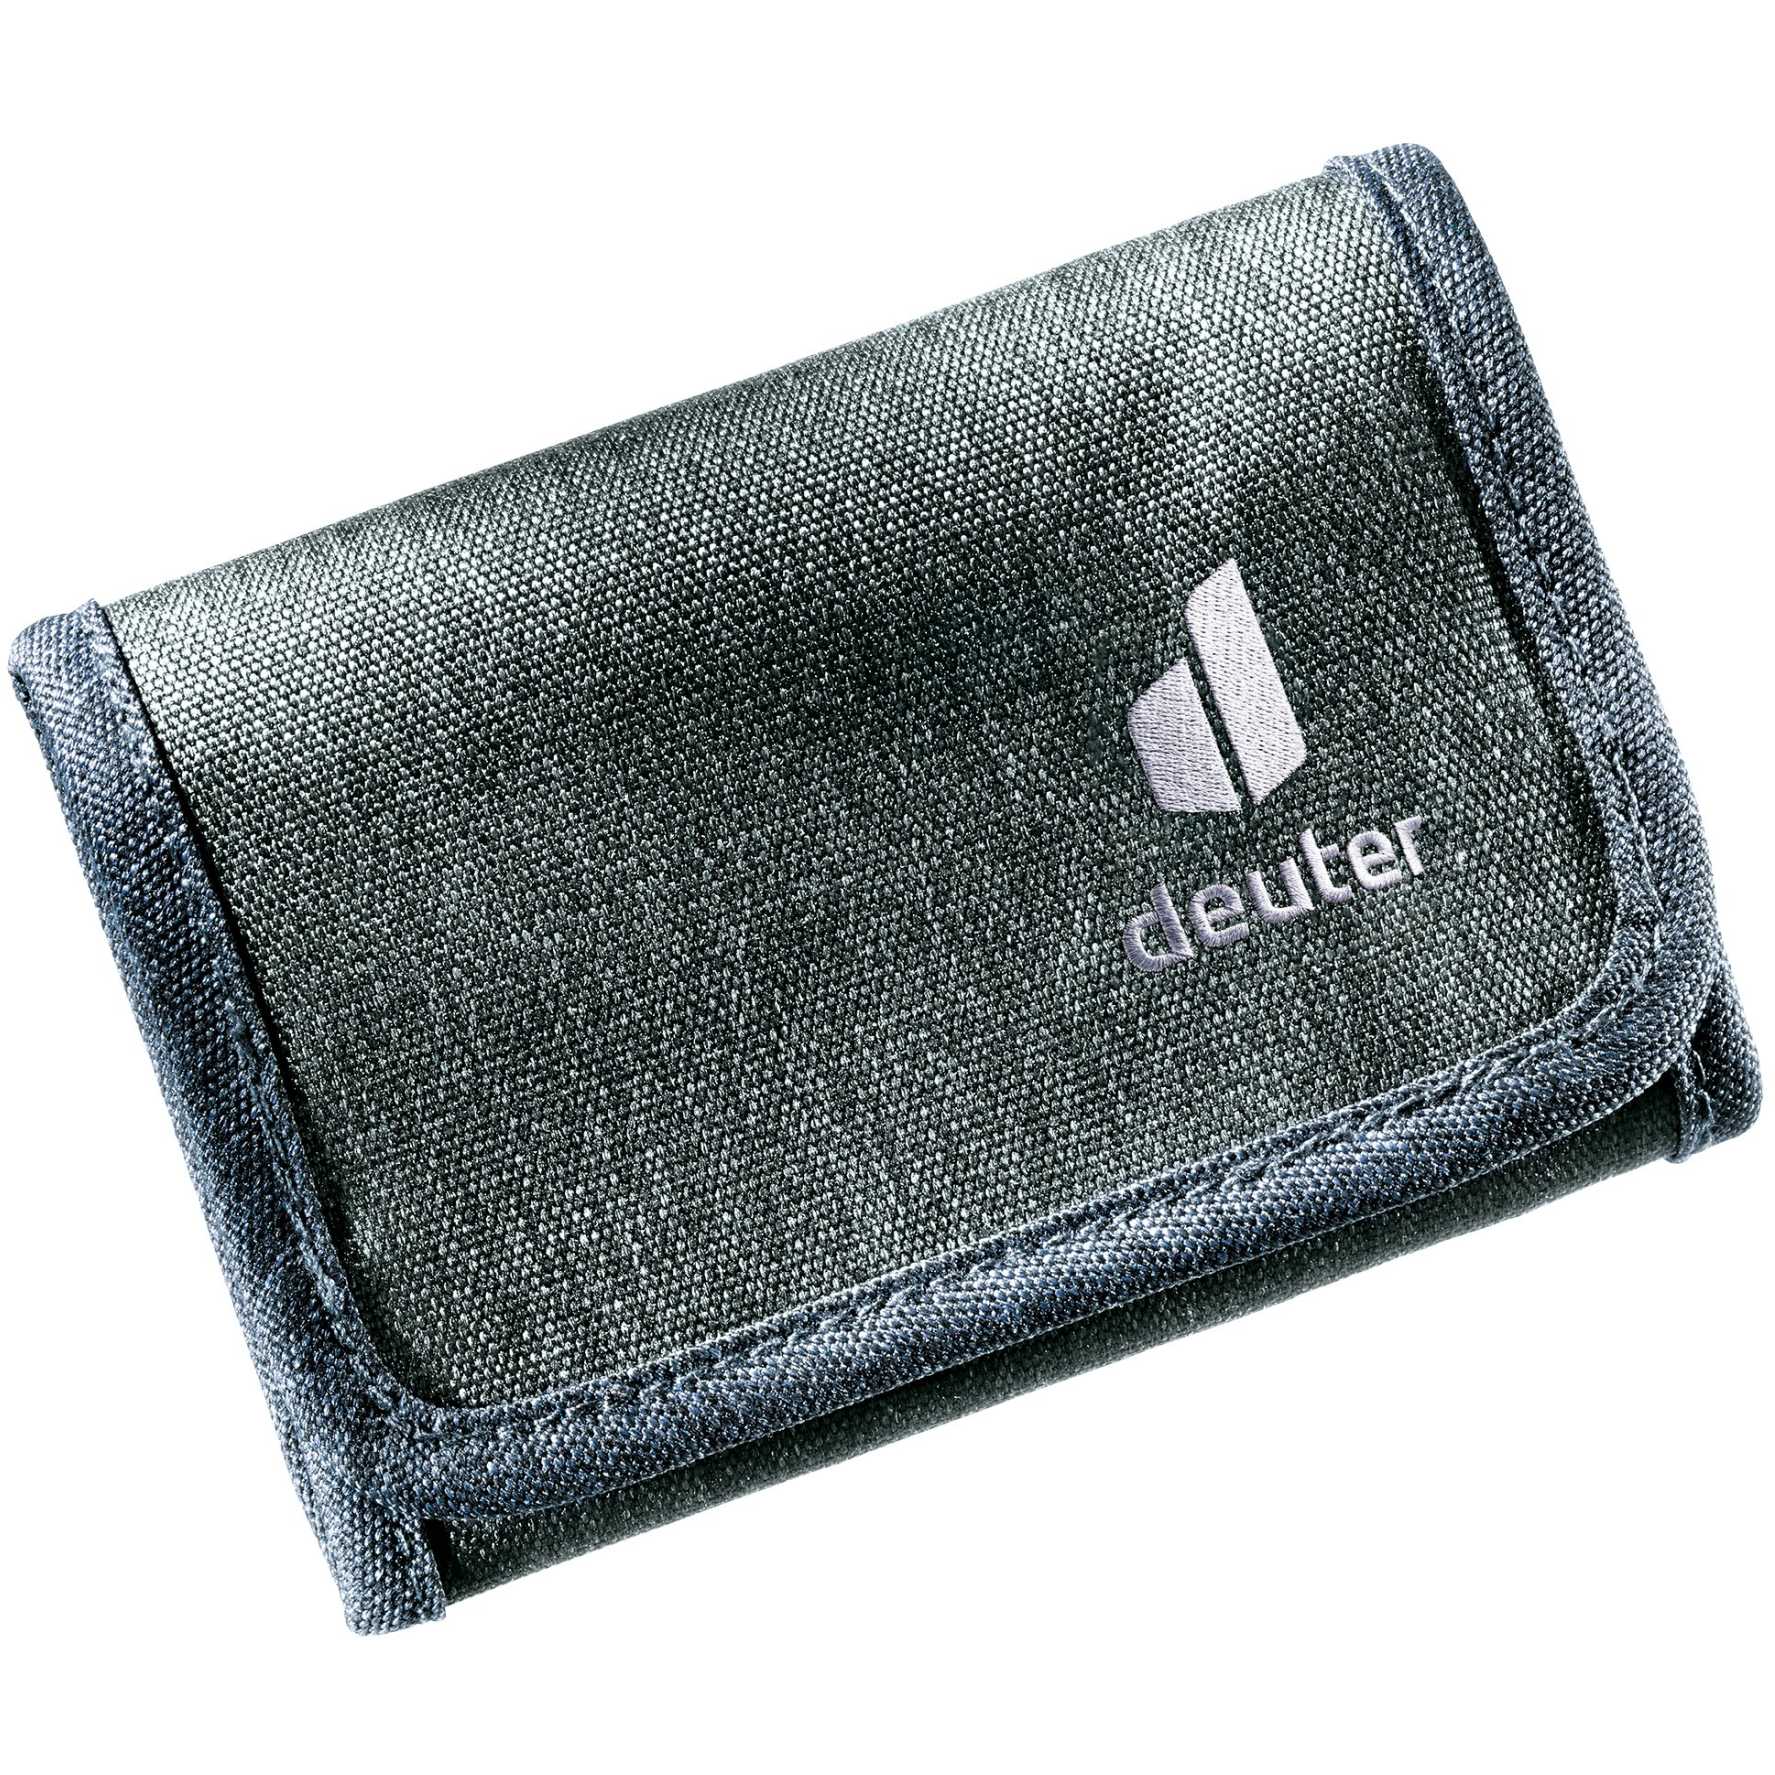 Picture of Deuter Travel Wallet - dresscode